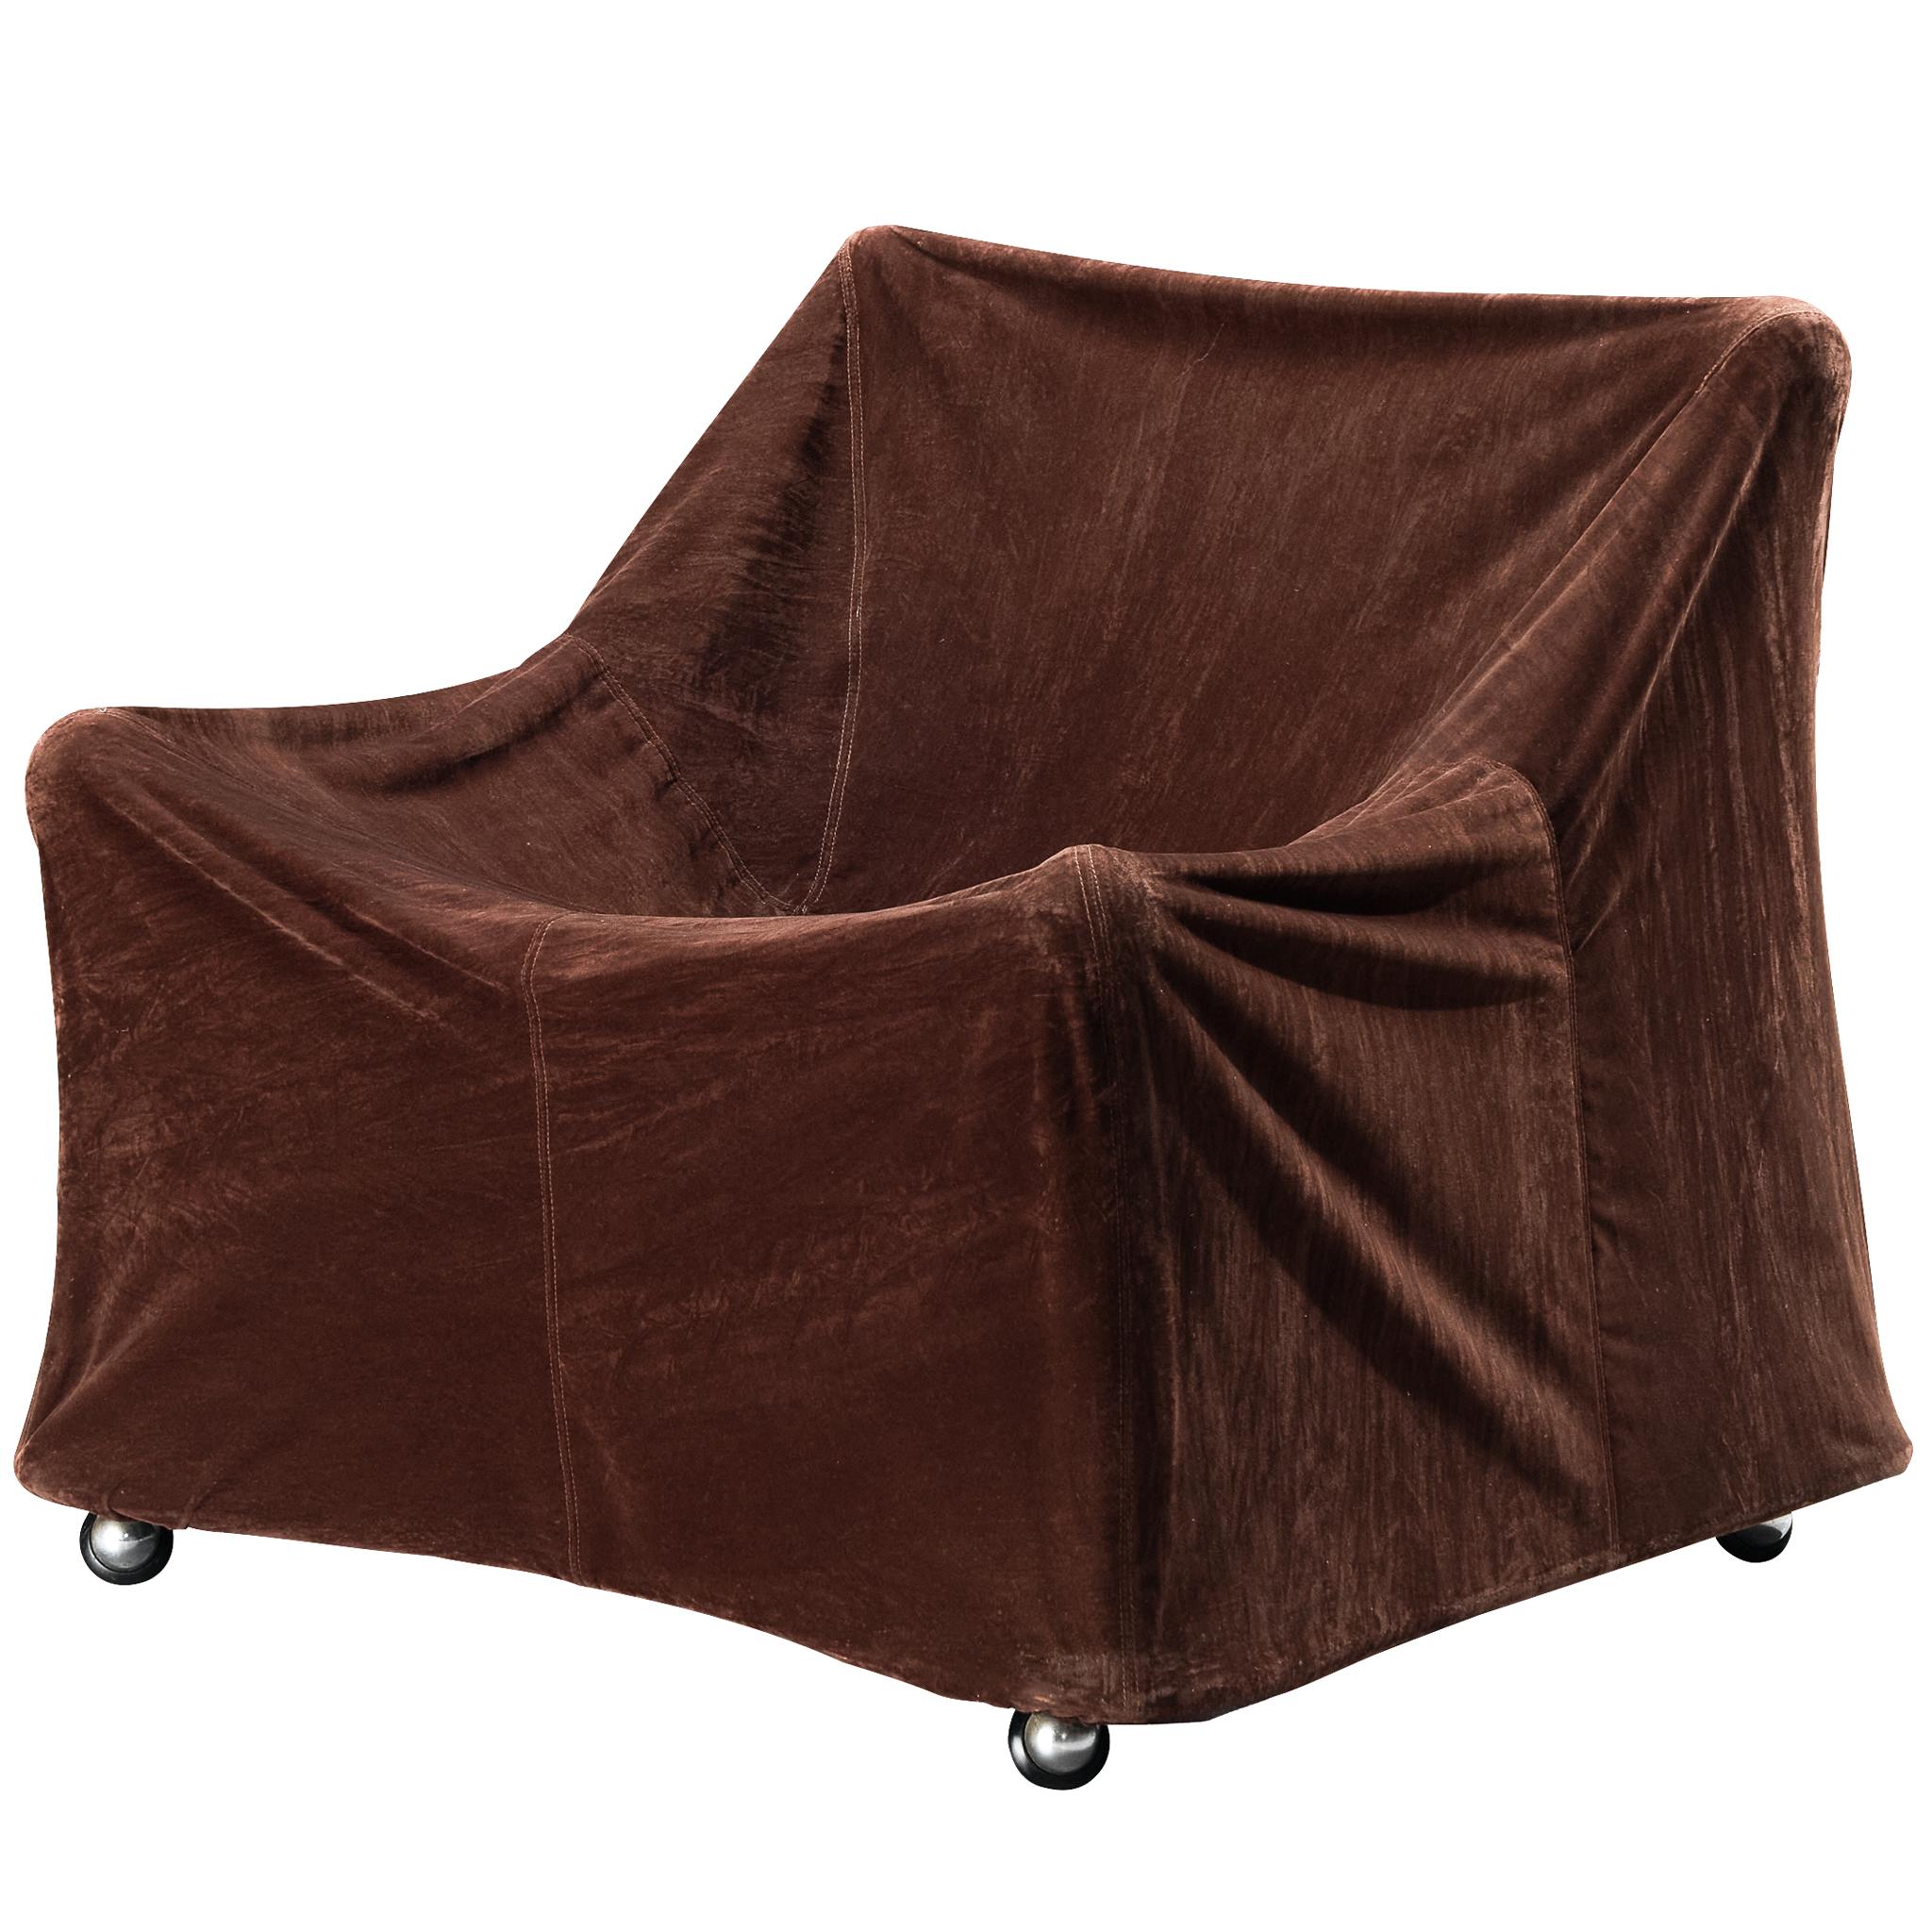 Ferdinando Buzzi for Ferruccio Brunati 'Camilla' Lounge Chair For Sale